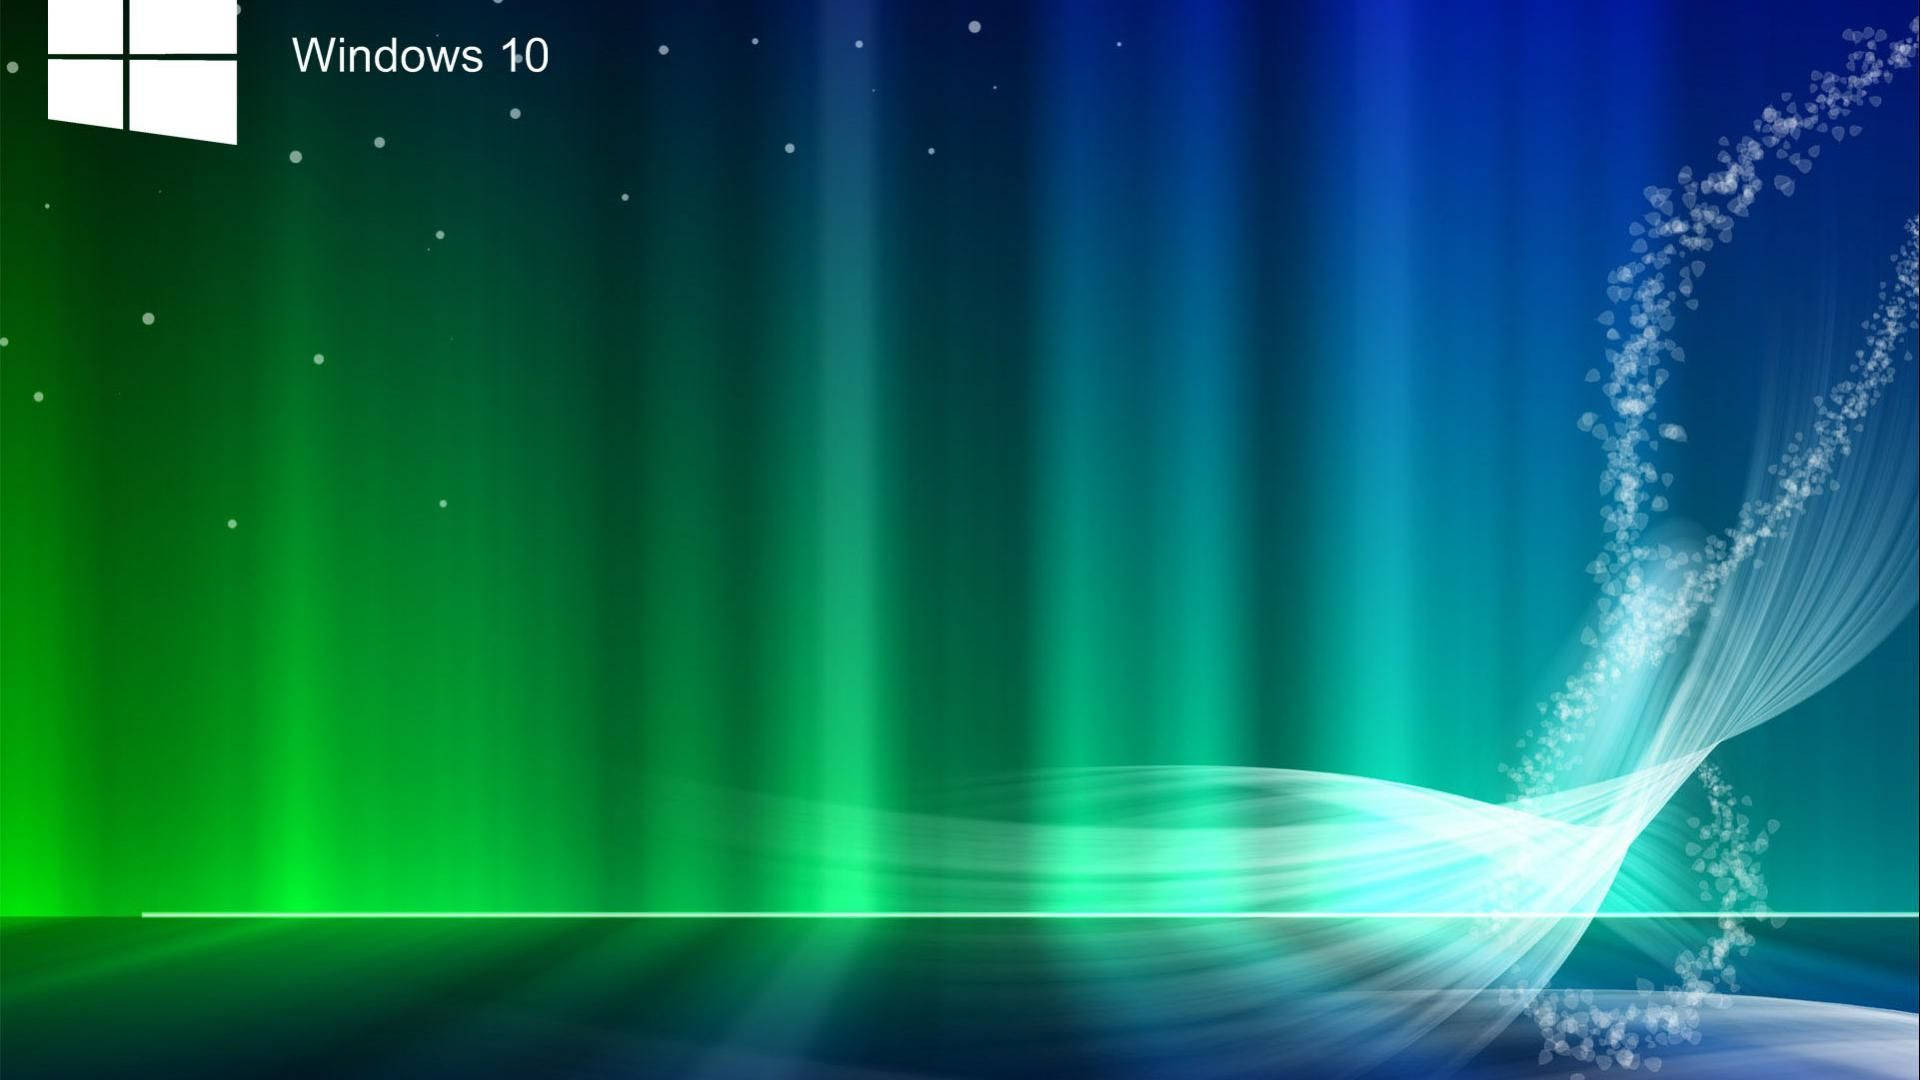 Windows 10 Hd Aurora